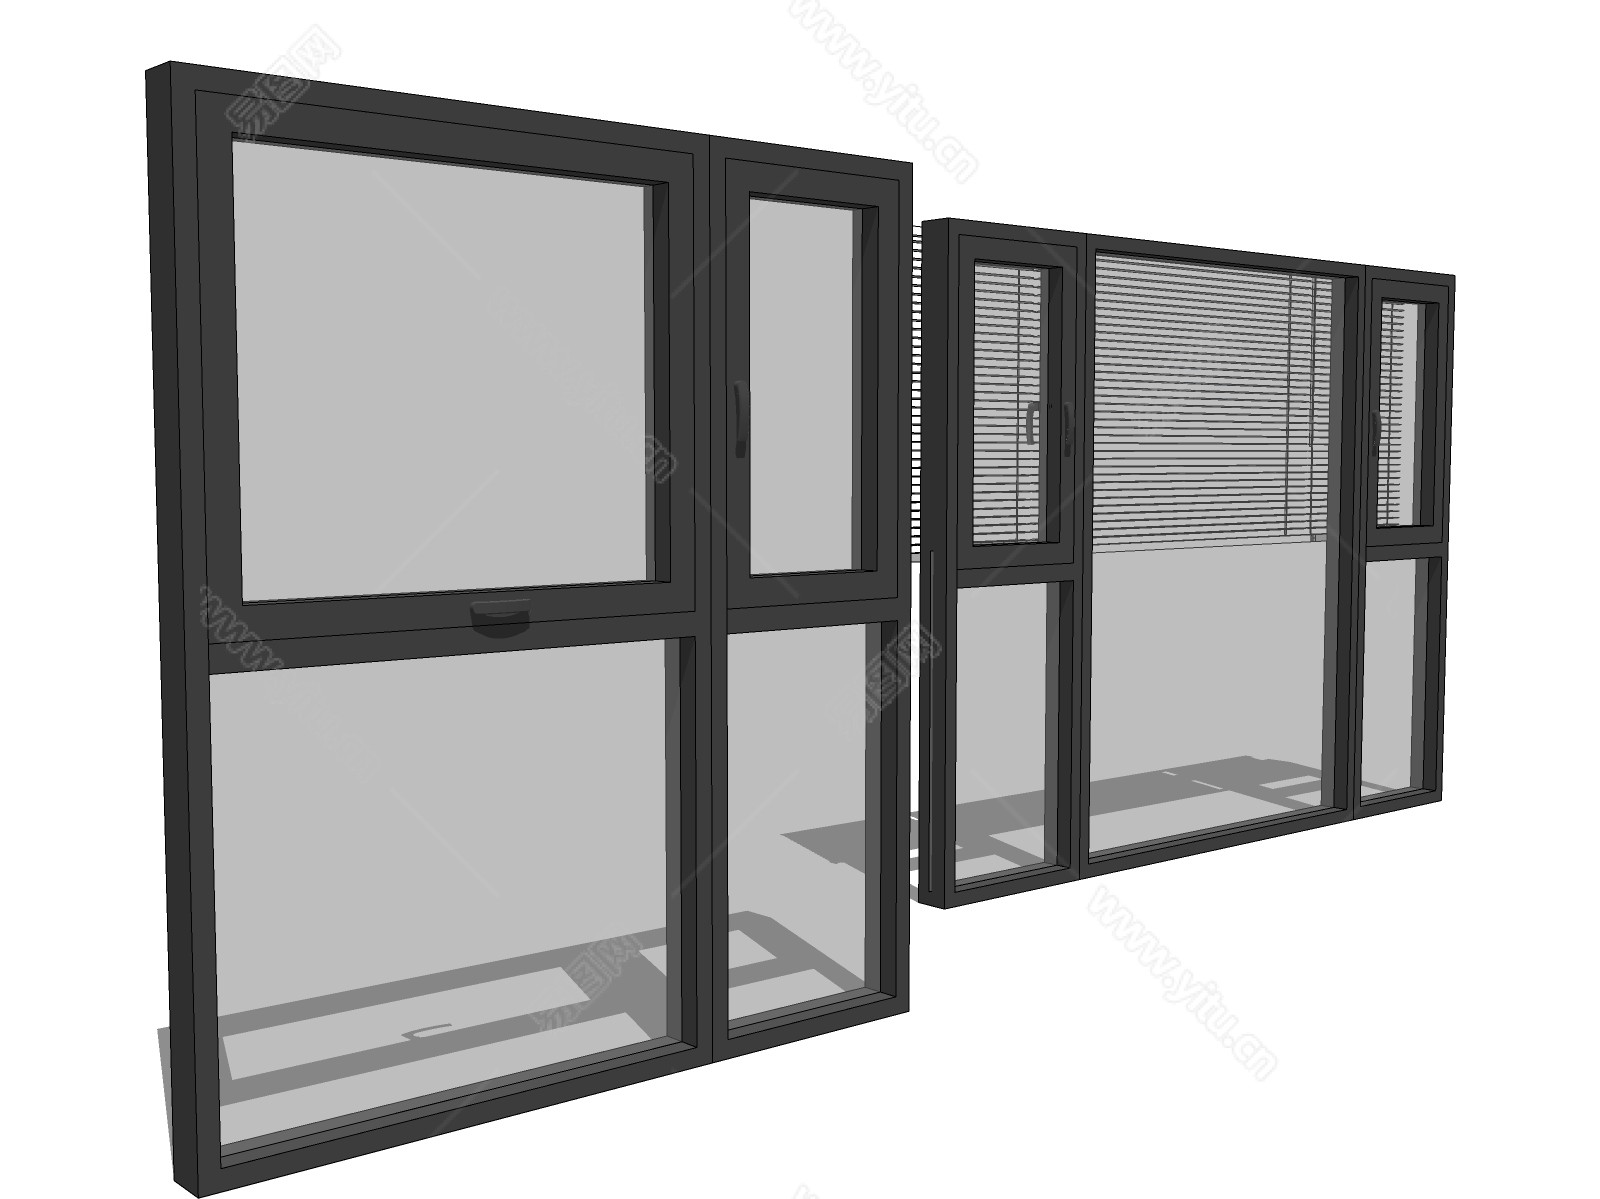 客厅现代落地窗户效果图展示样机v1 Large Windows-Mockup-01-变色鱼